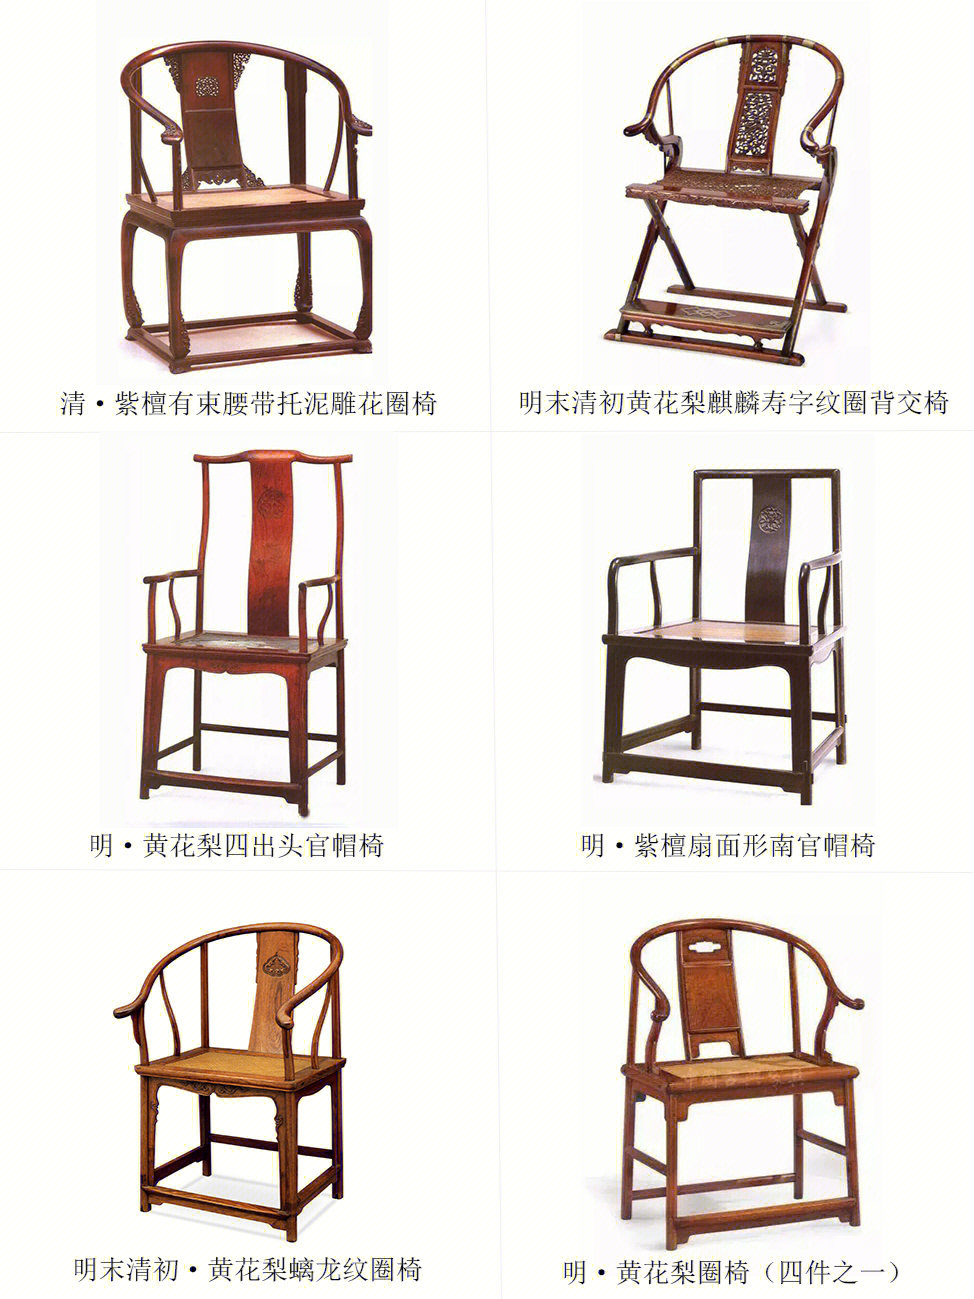 中国椅明式家具椅子大赏01